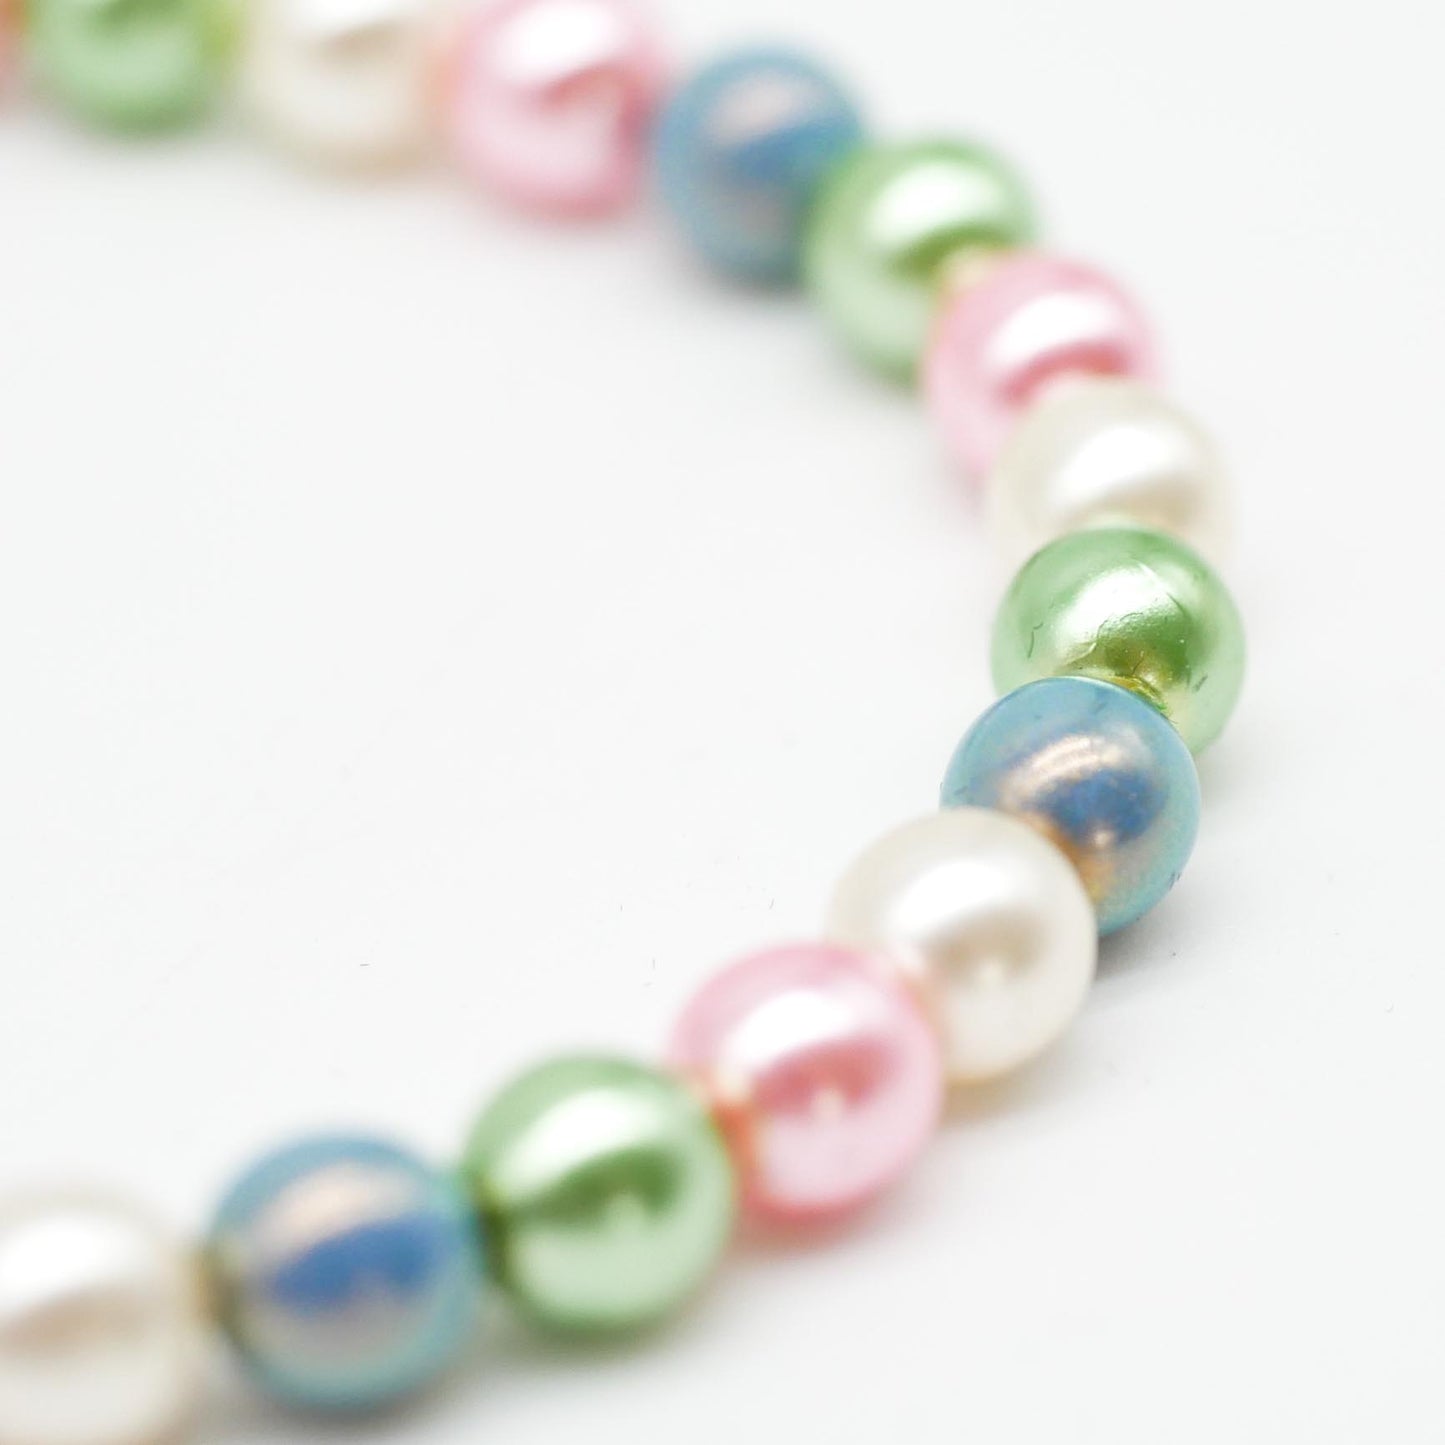 Armband Rainbow Pearls